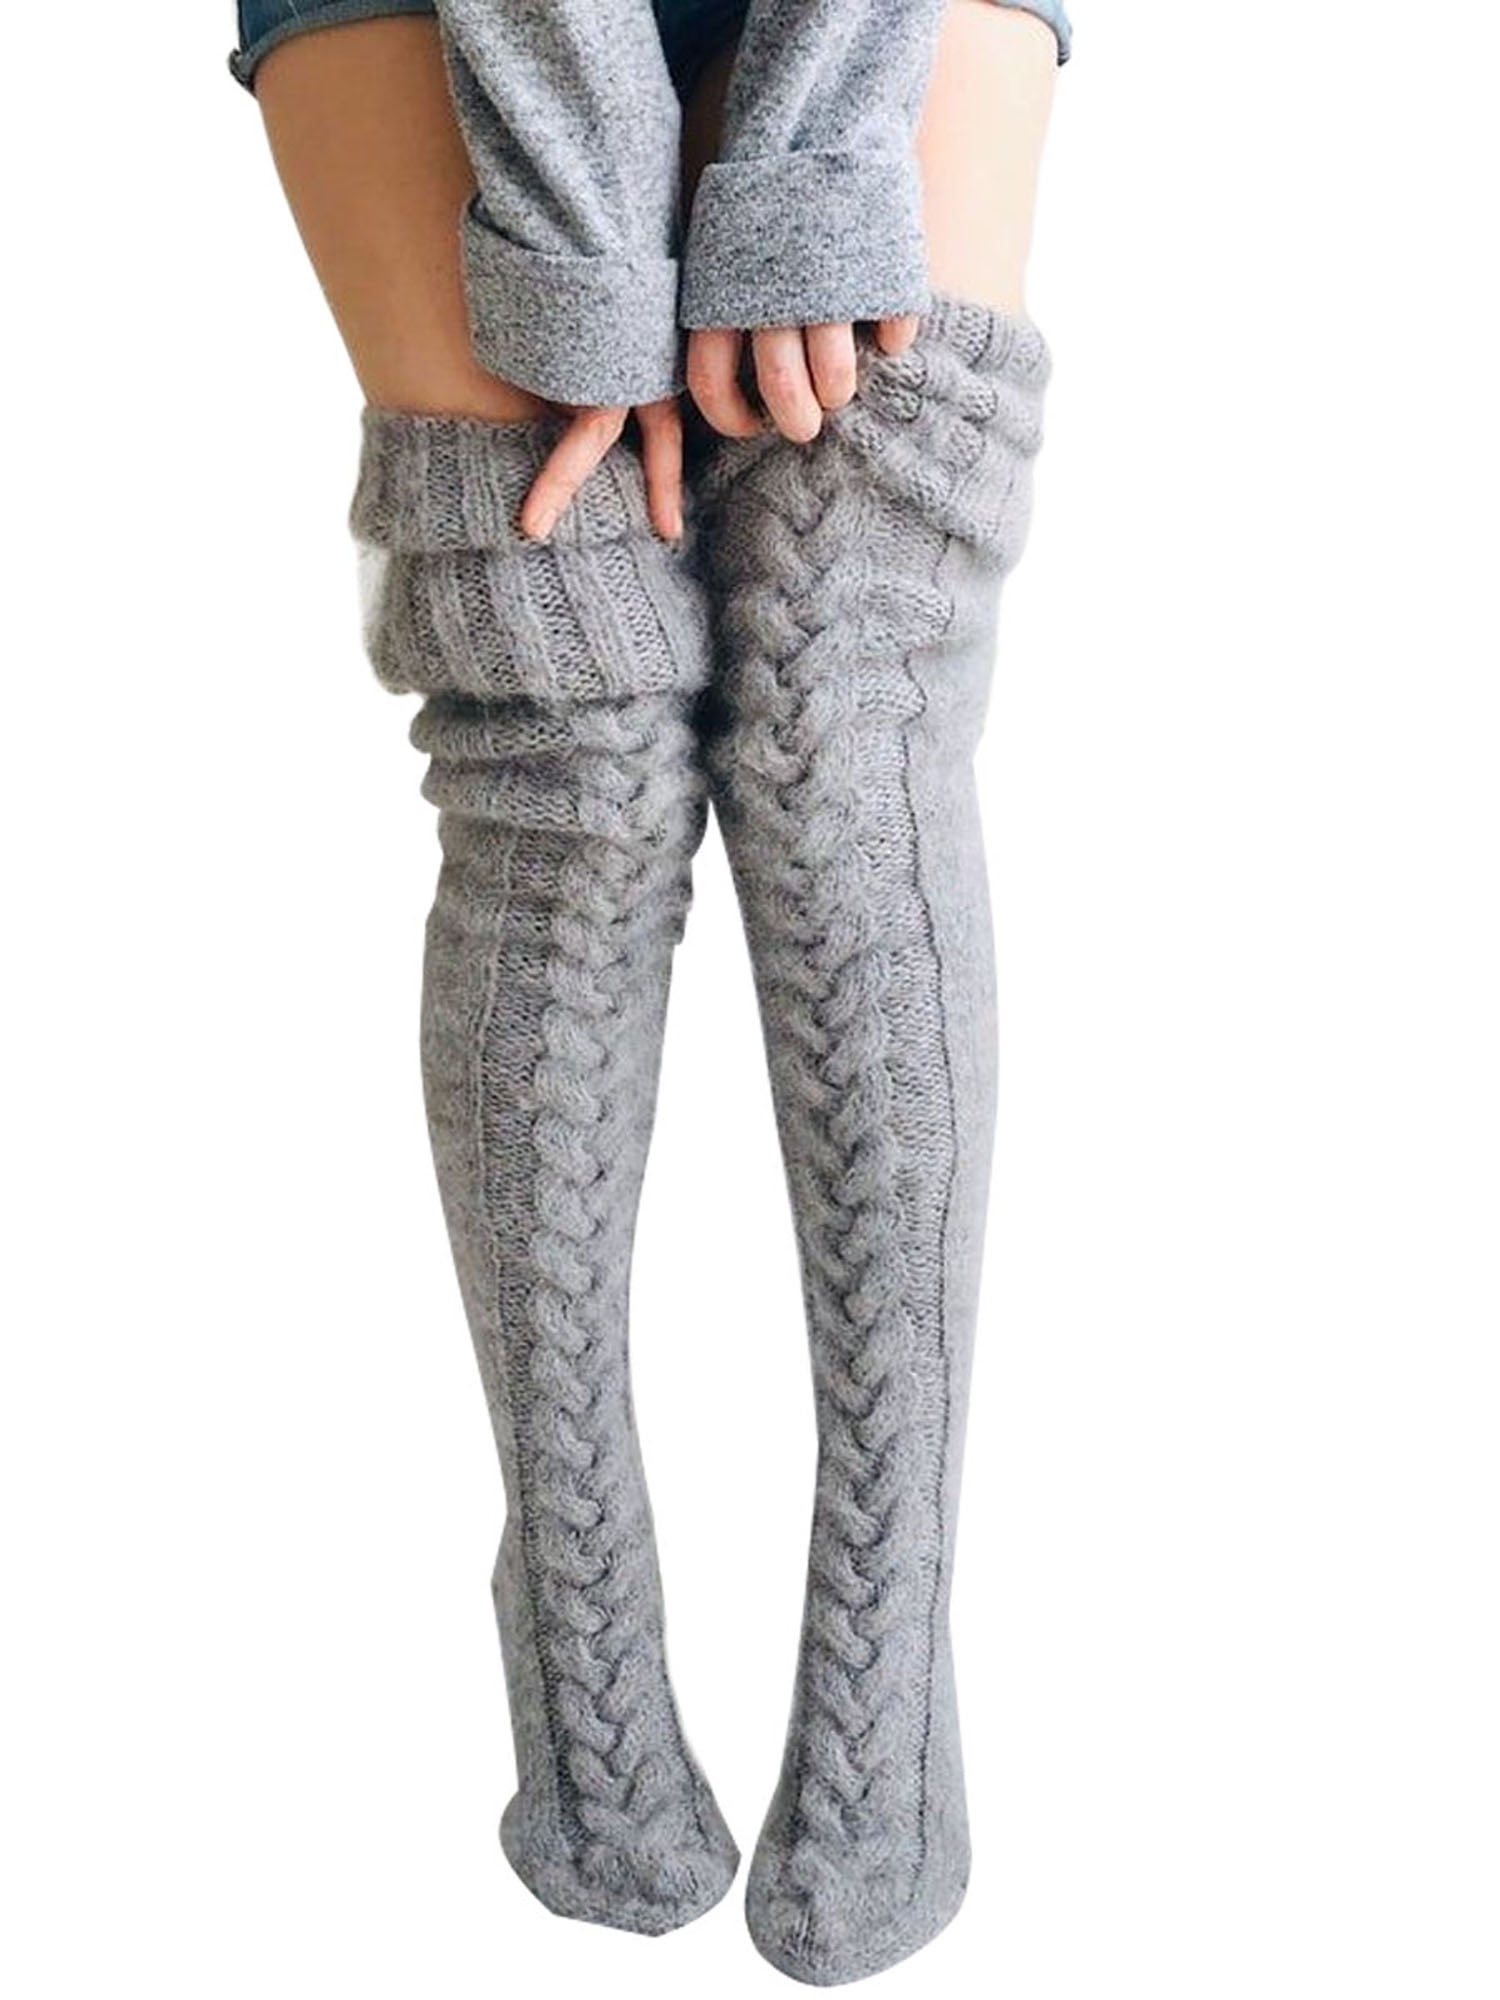 Girl Women Winter Wool Warm Knit Over Knee Thigh High Stockings Socks Leggings